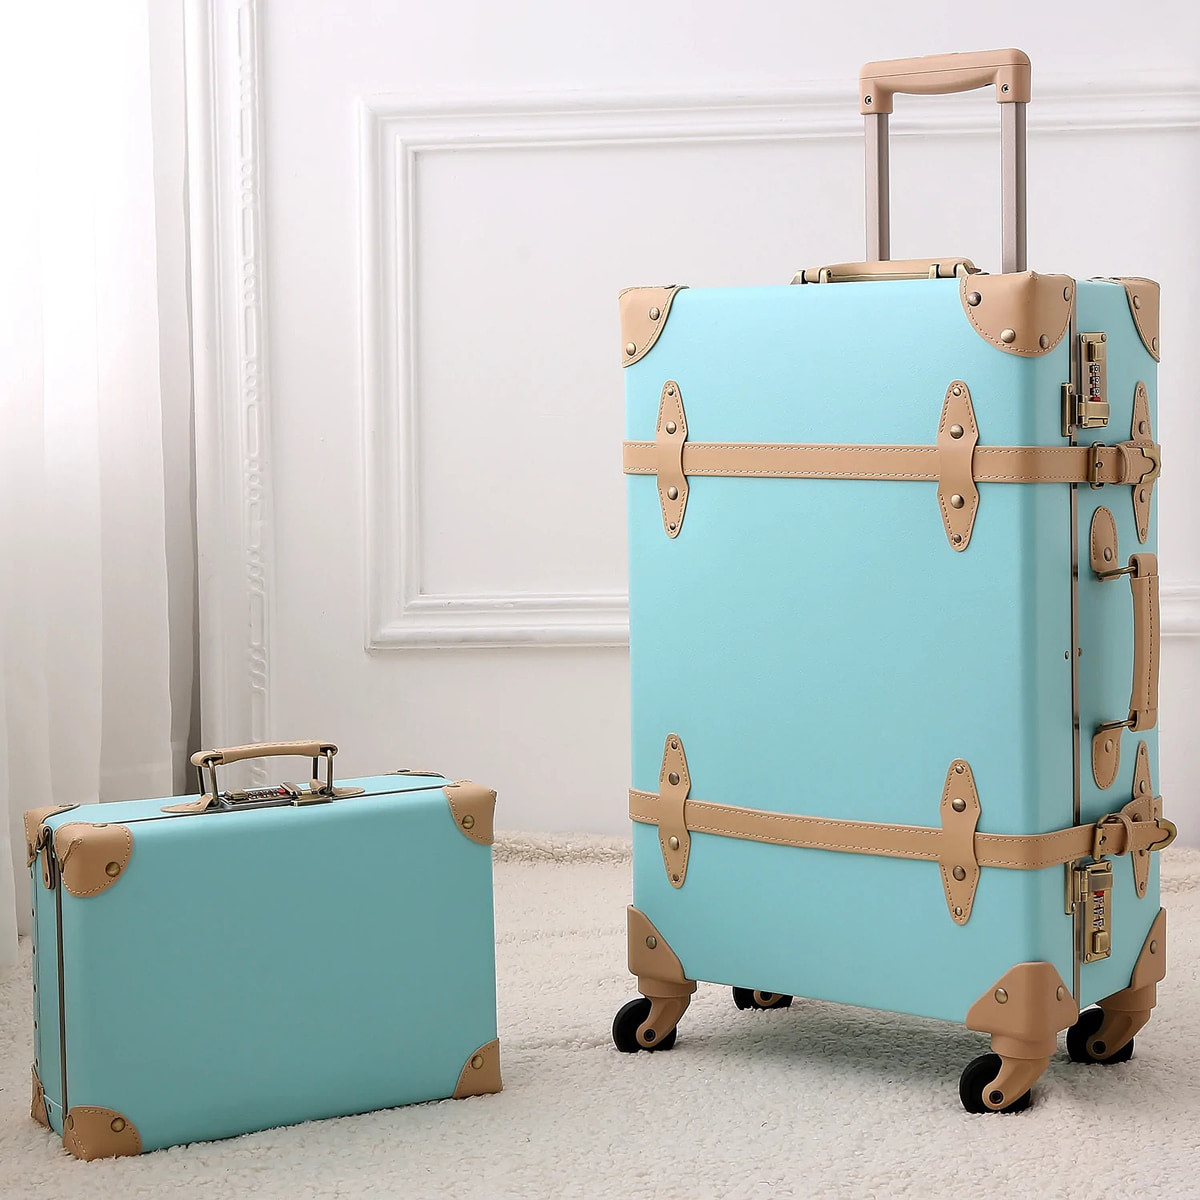 This Ivy House  Goyard luggage, Luxury luggage, Luxury luggage sets